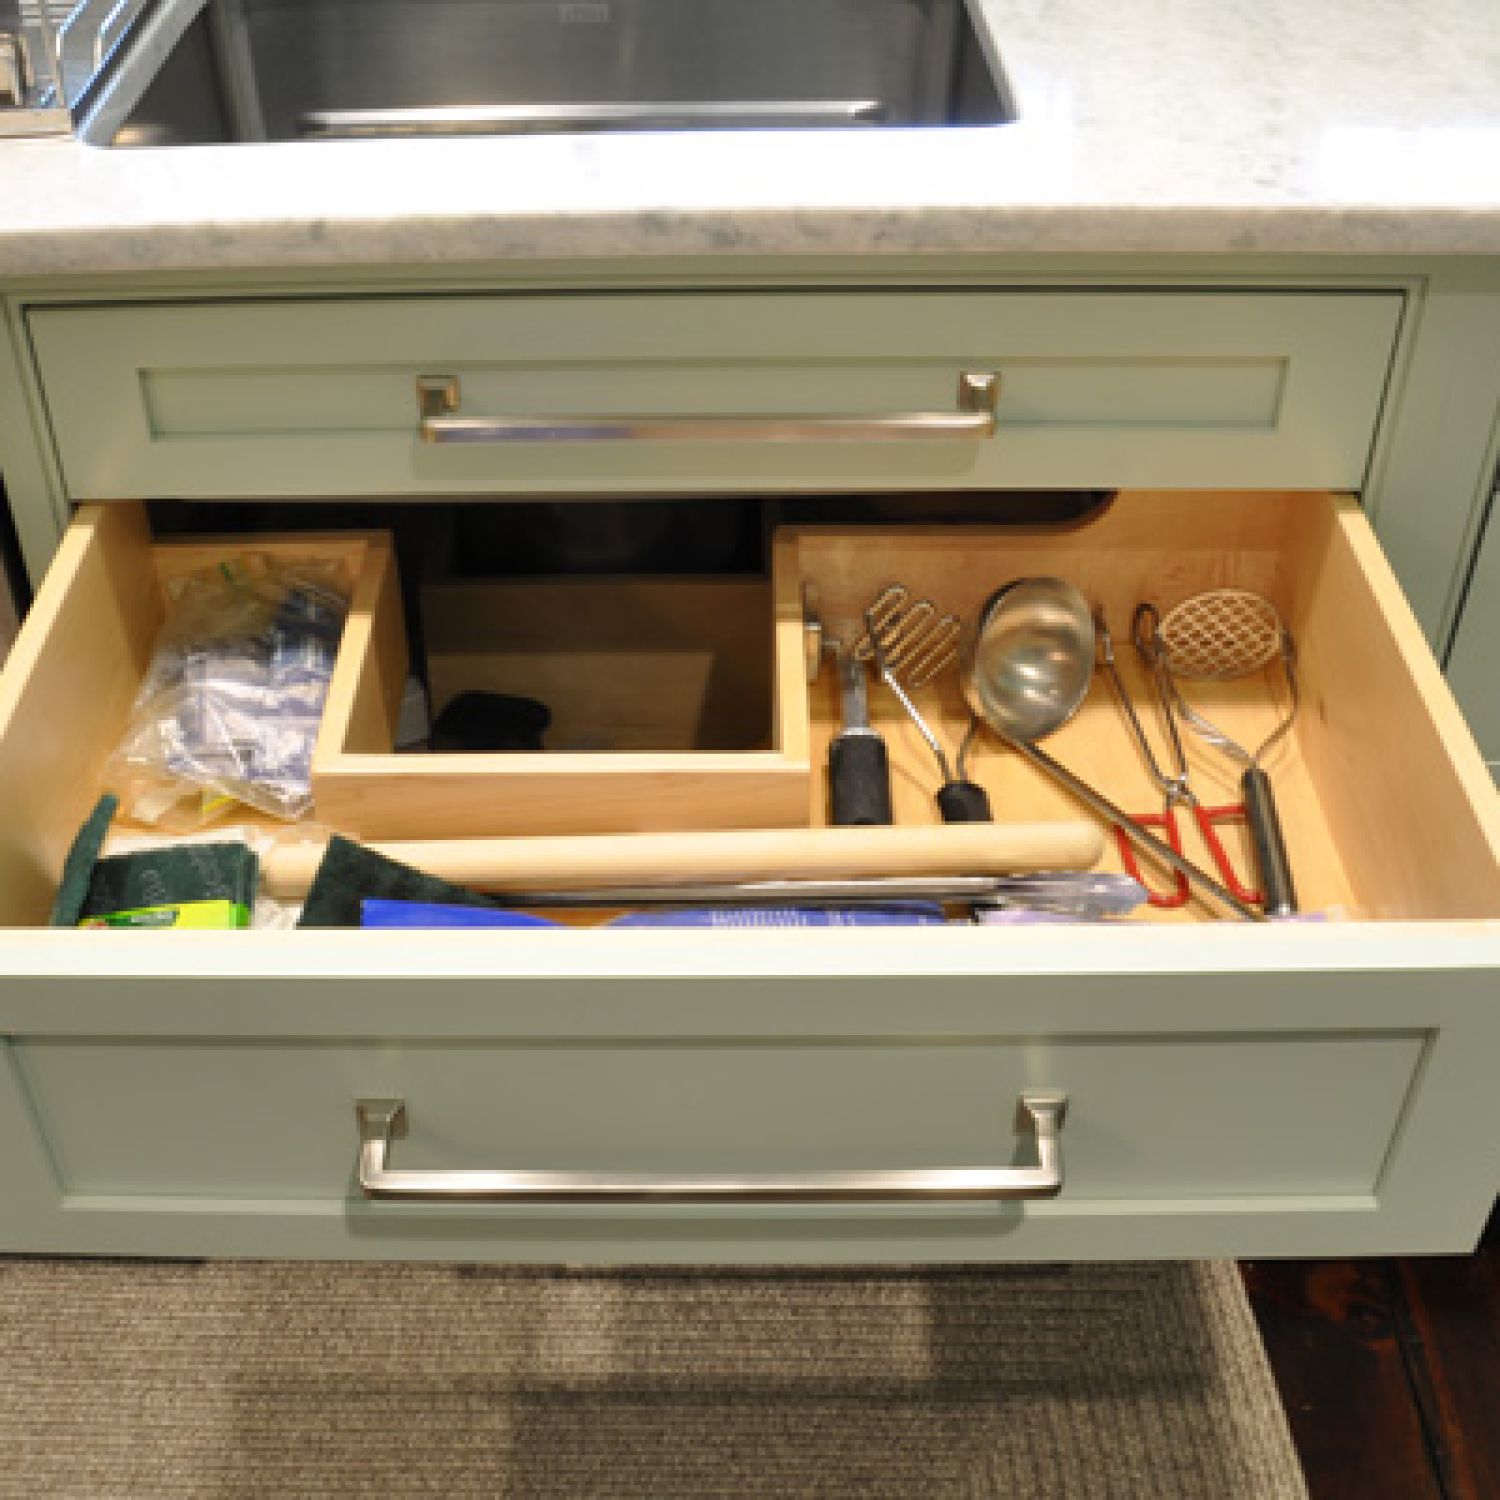 U-Shaped Drawer in Kitchen | Under-Sink Organizer Ideas